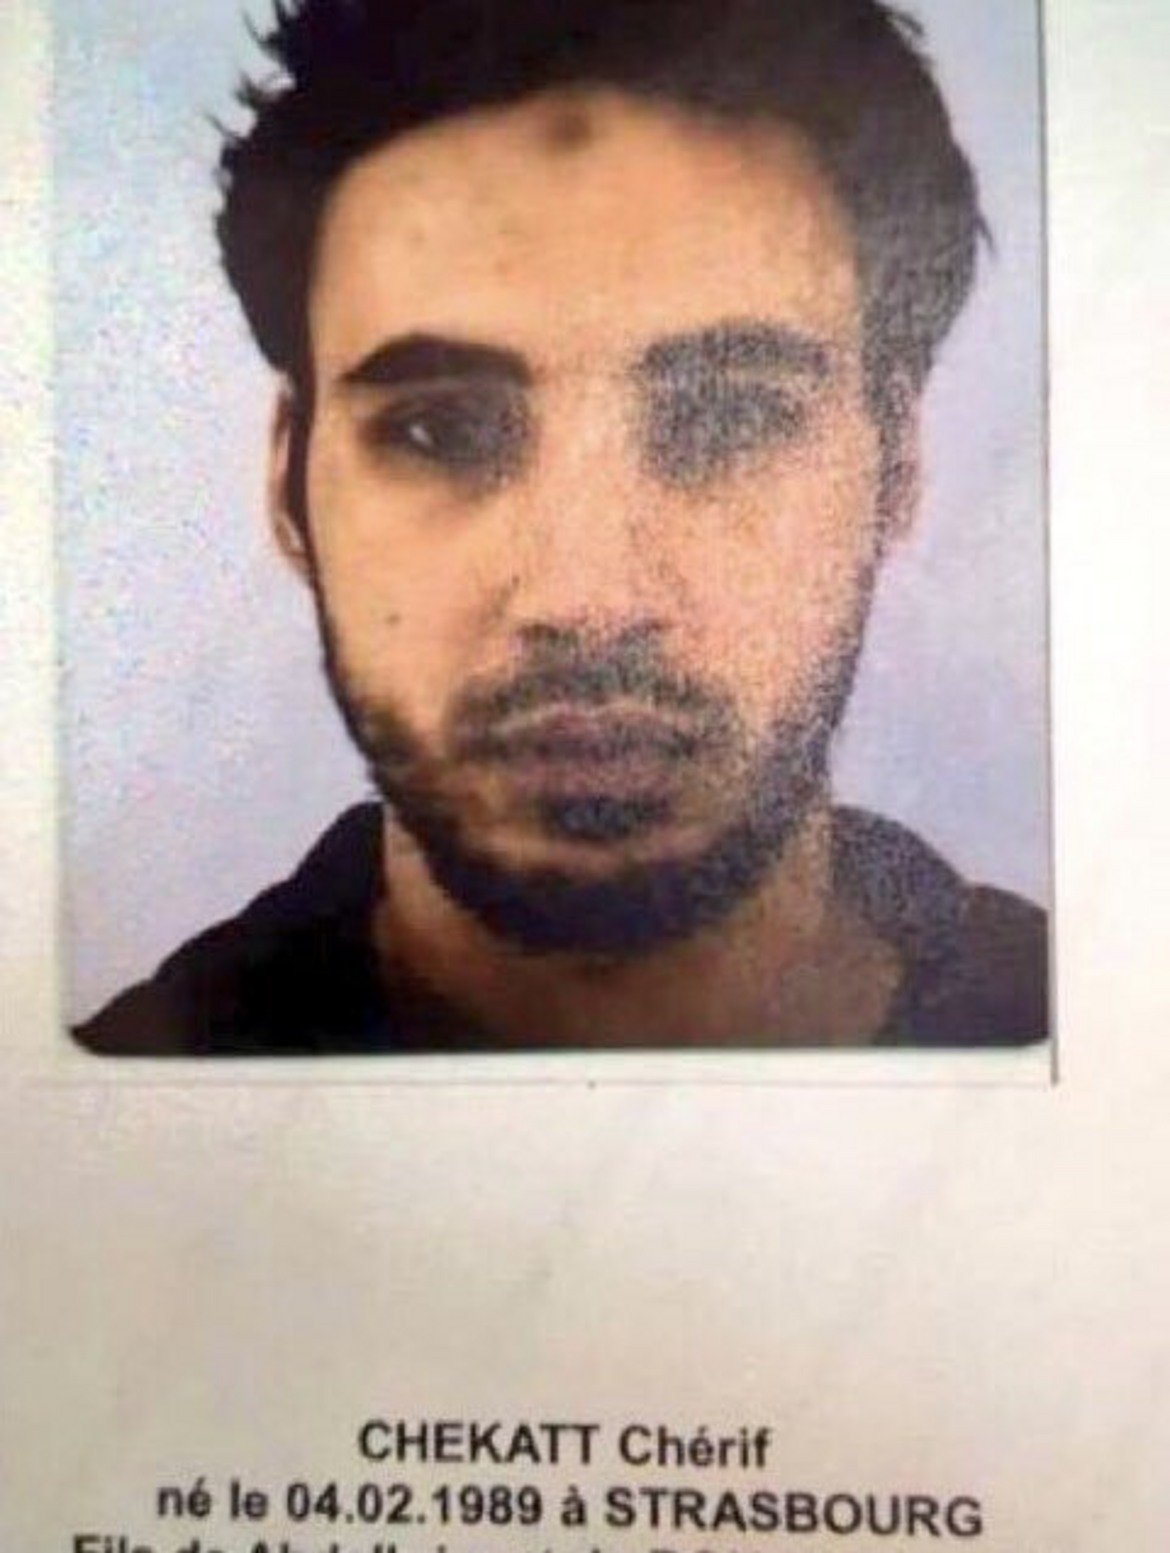 Снимка на заподозрения за атентата Шериф Шекат, разпространена в социалните мрежи.